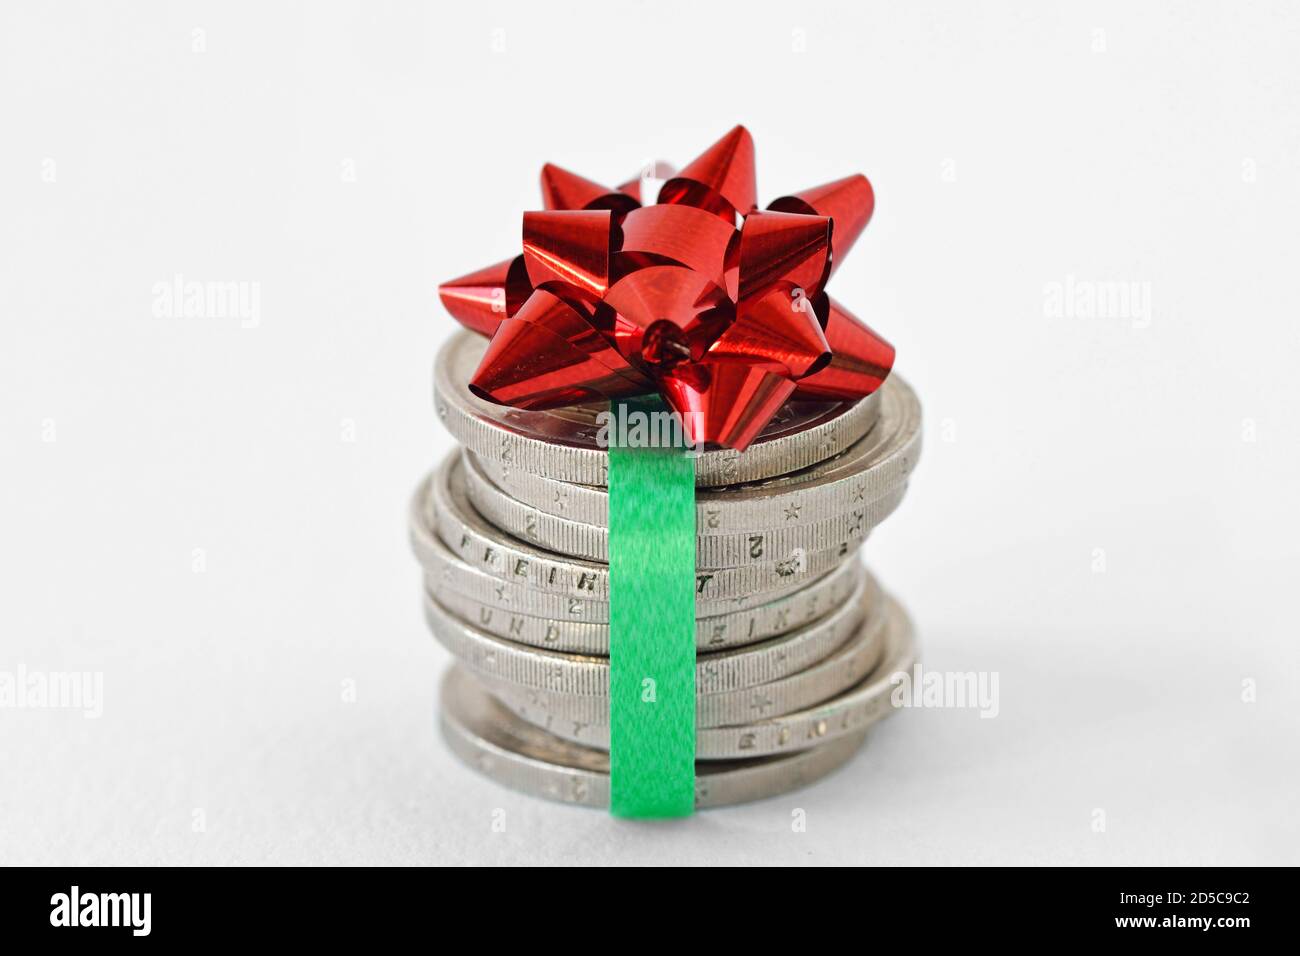 Stapel von Euro-Münzen mit Band und Geschenkschleife verpackt - Konzept der Wirtschaft und Geldgeschenk Stockfoto